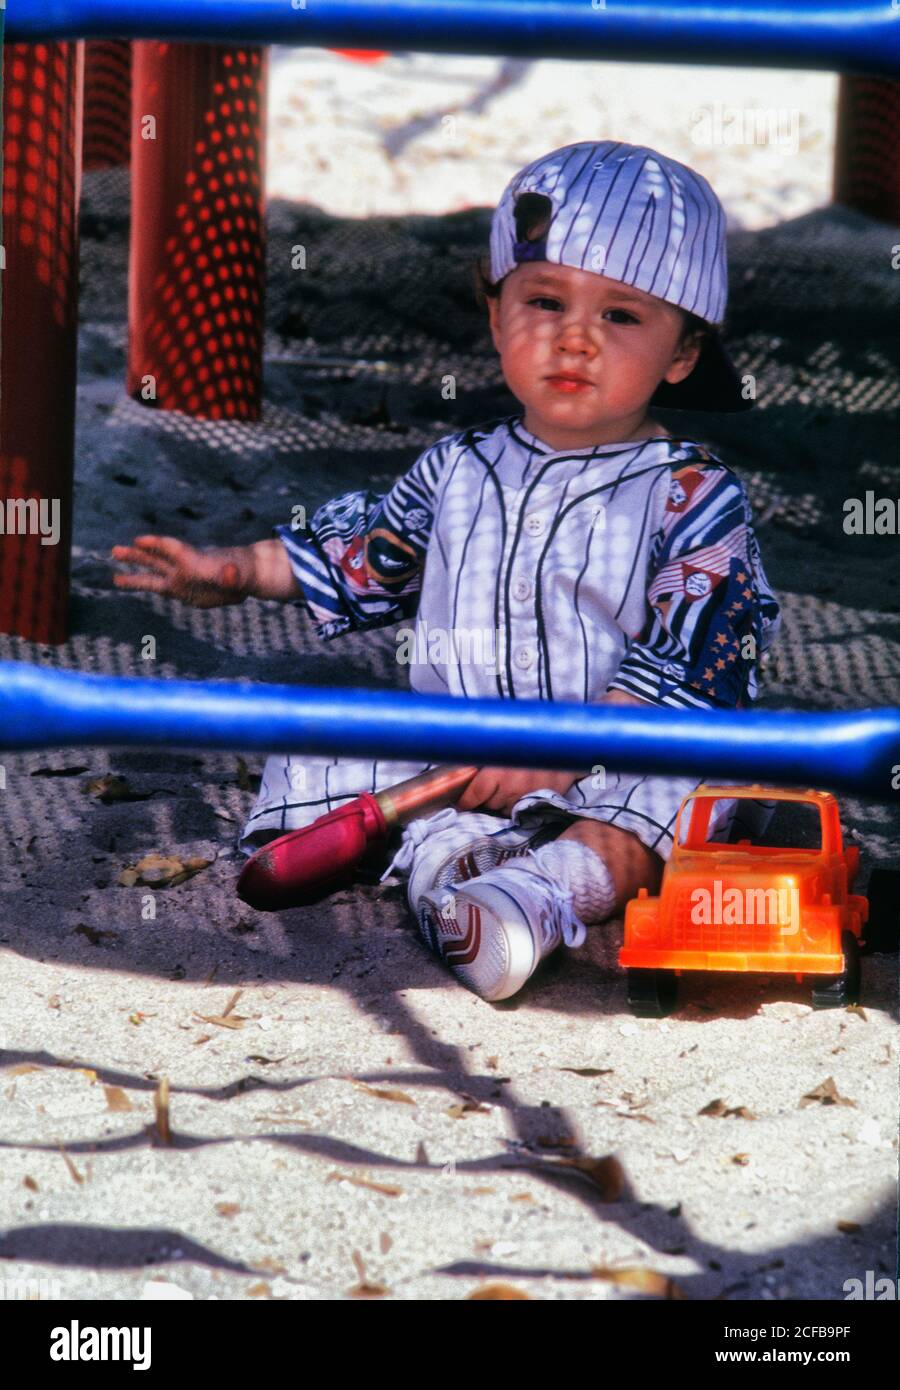 Niño pequeño jugando en arena con camión de juguete Foto de stock